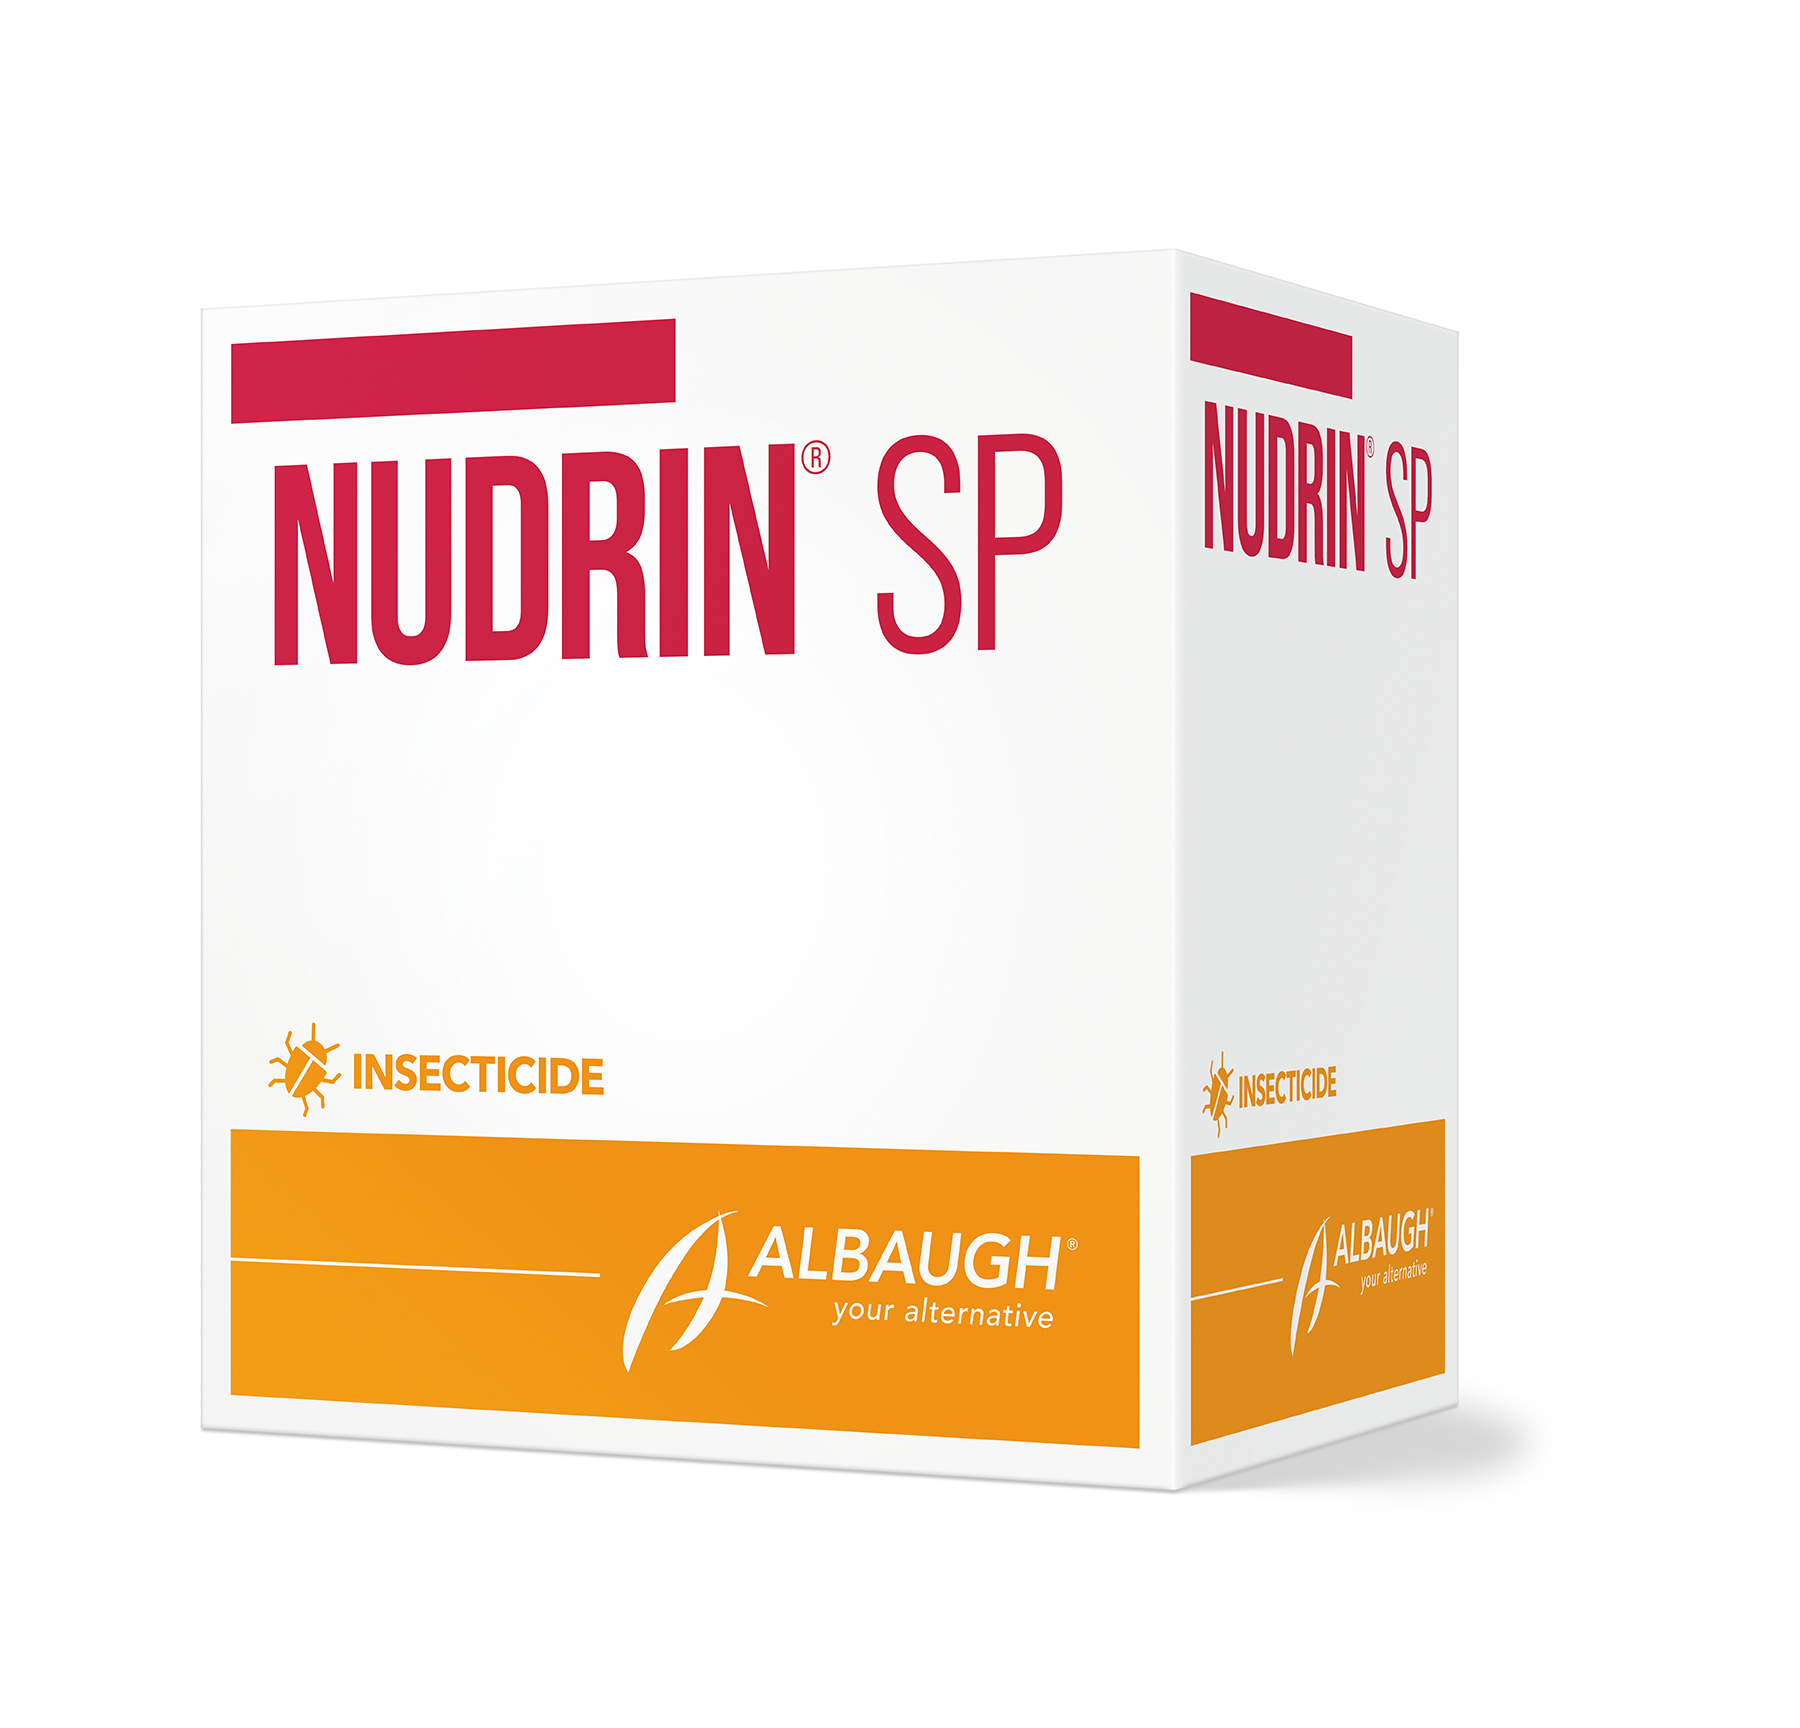 Nudrin® SP